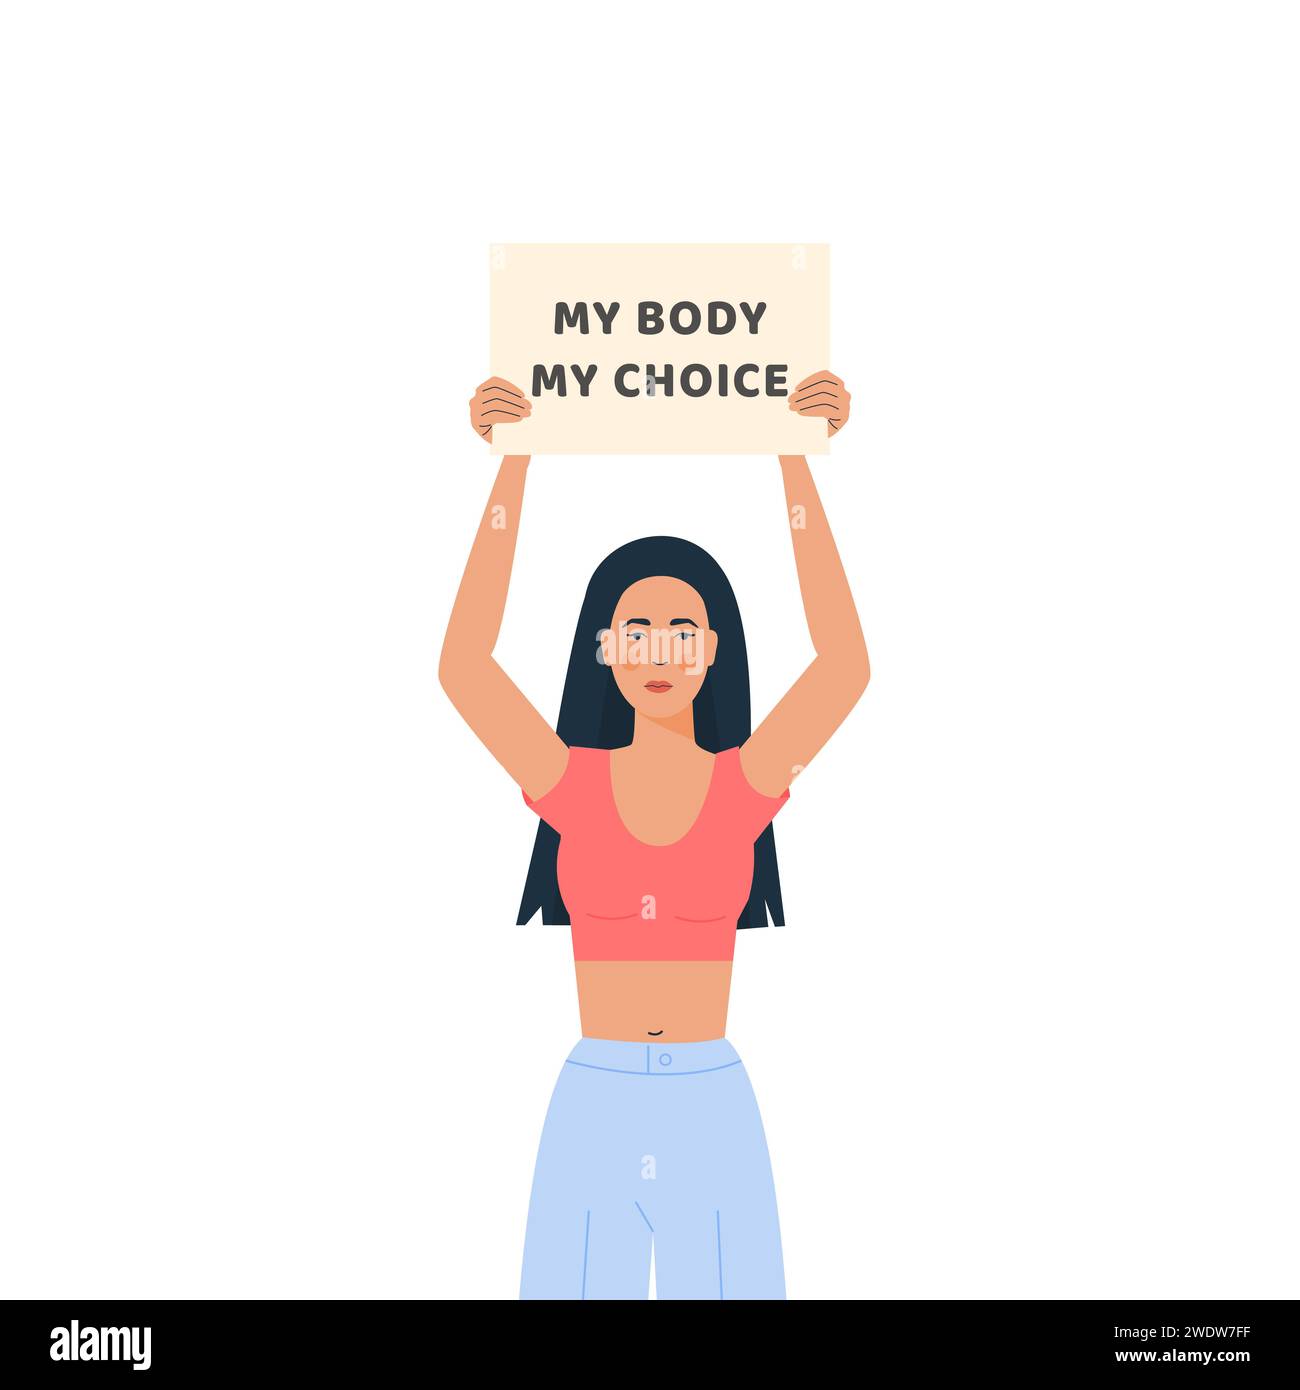 Mi cuerpo, mi elección. Movimiento contra la prohibición del aborto. Placard contra el embarazo no deseado. Mujer joven moderna de moda que sostiene la bandera para apoyar a las mujeres r Ilustración del Vector